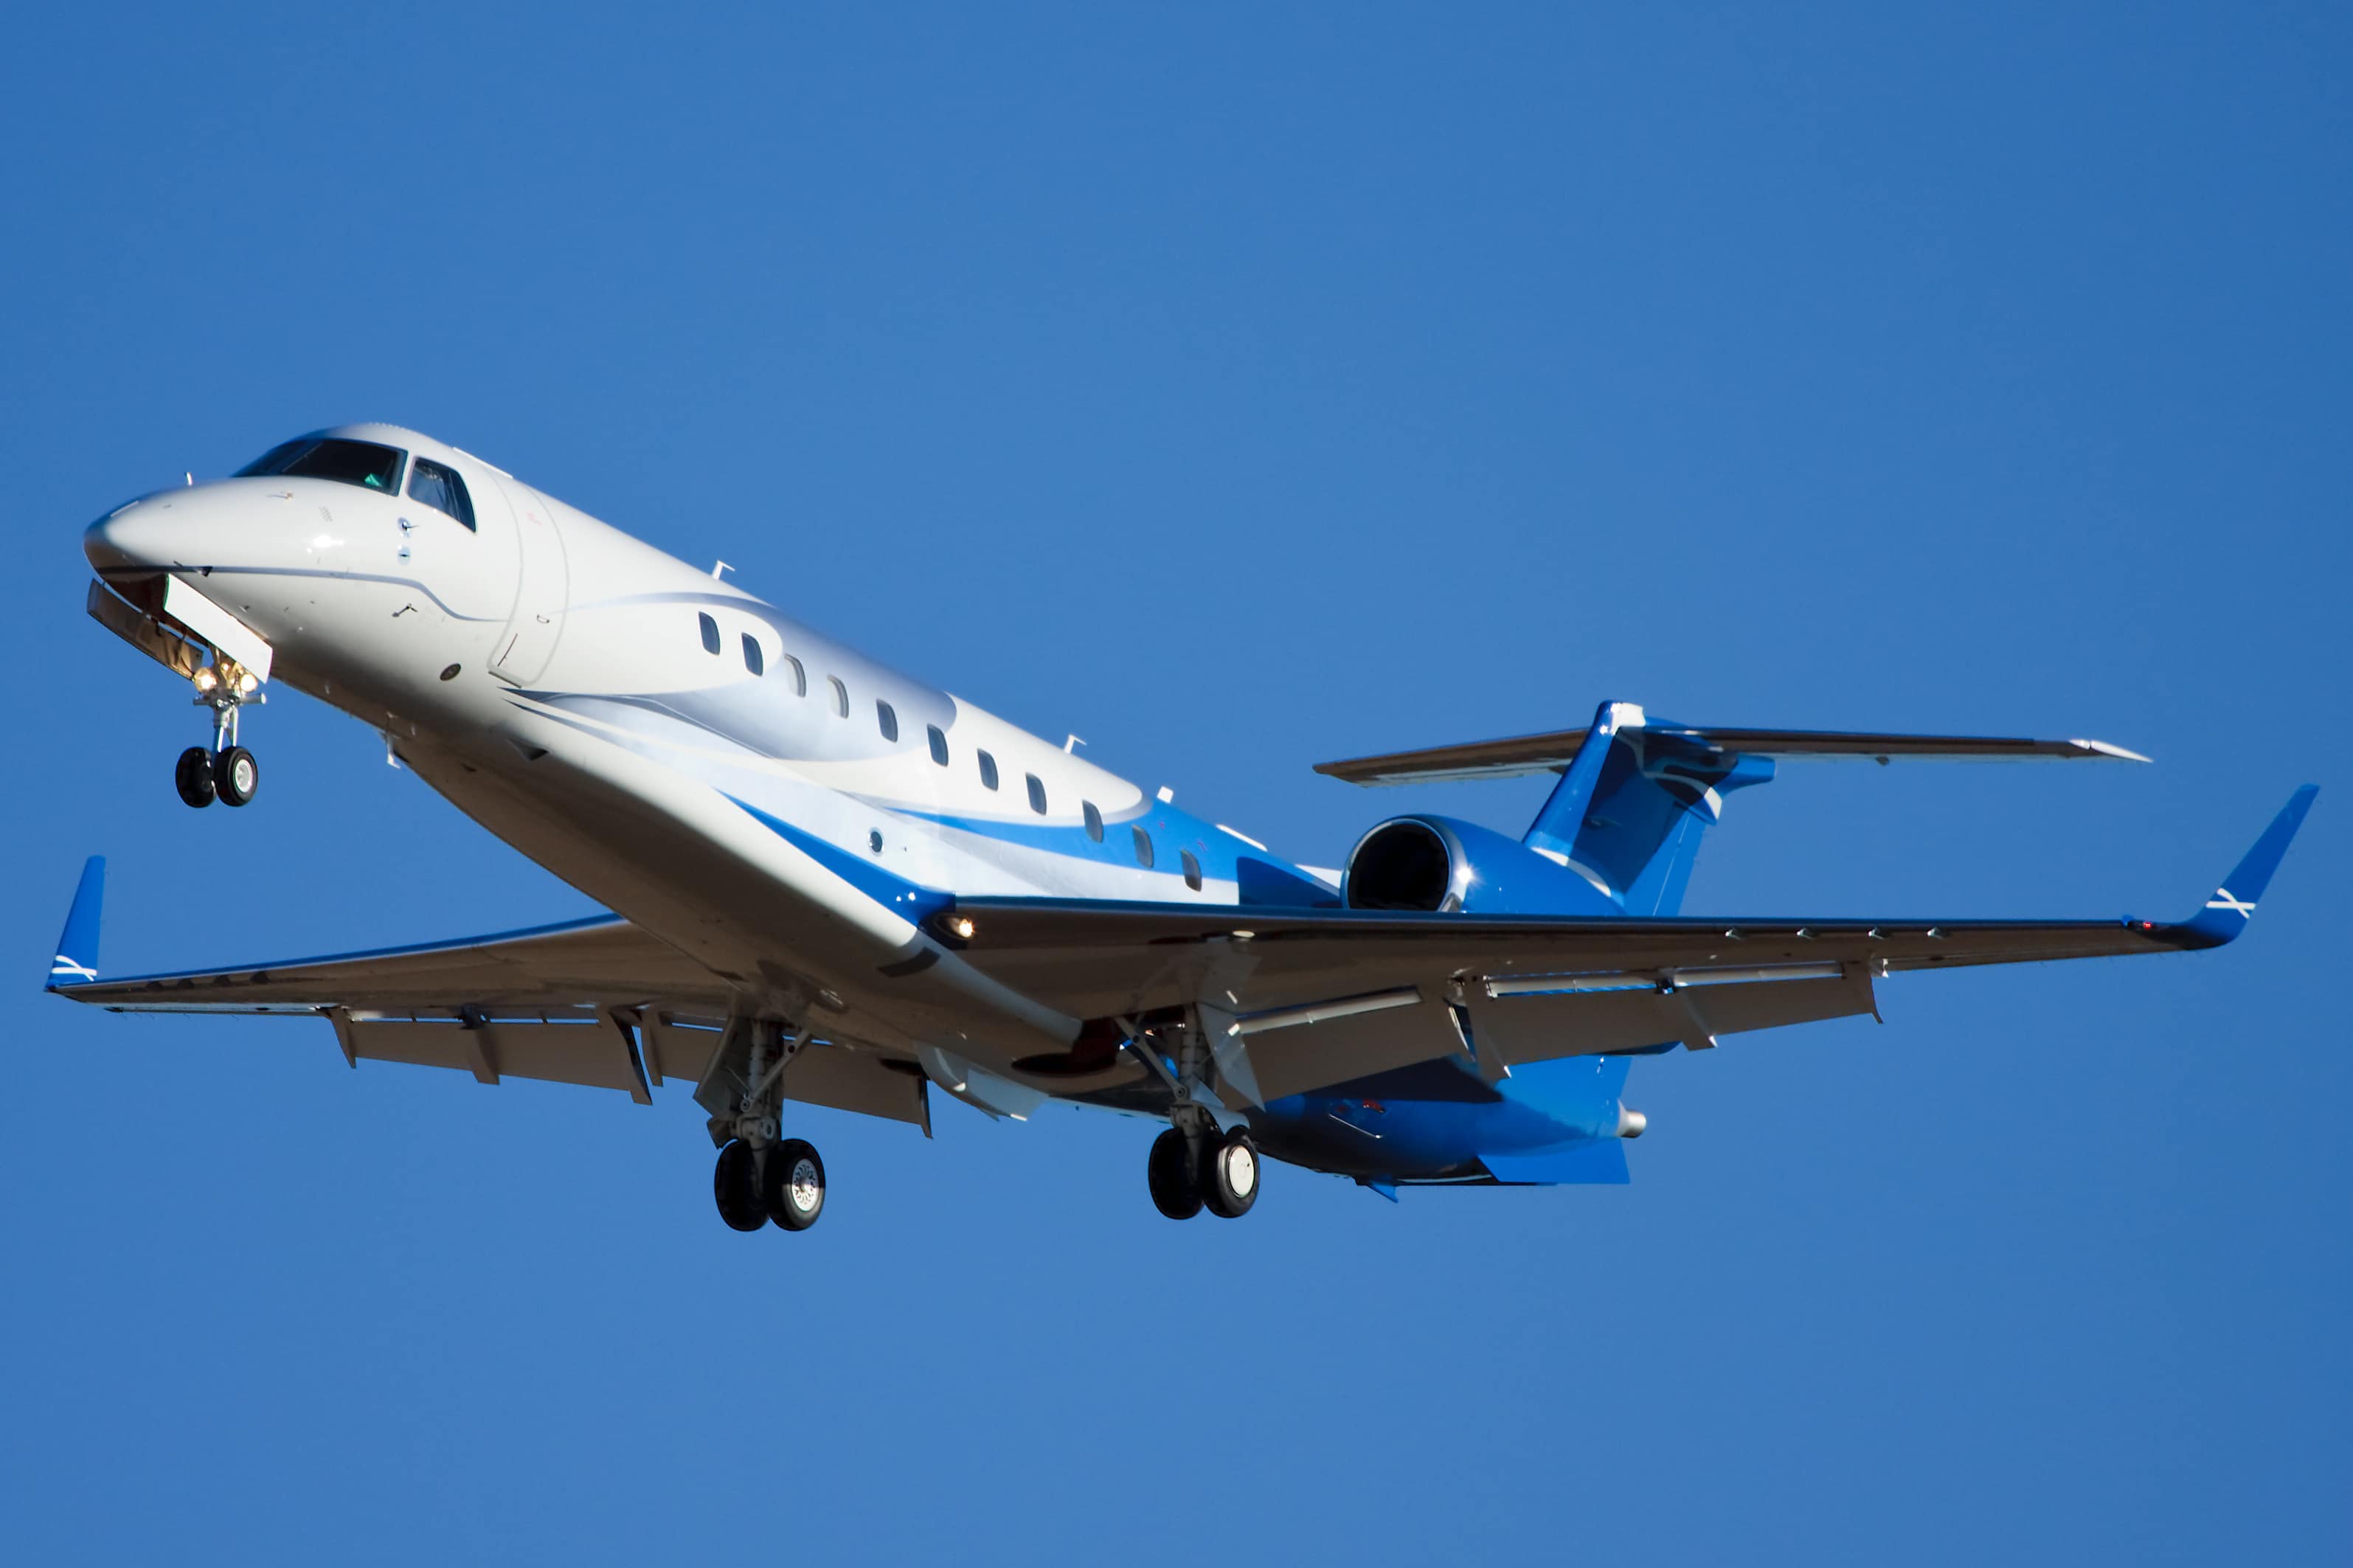 Embraer Legacy 600 de couleur bleue en train d'atterrir sur un aéroport.